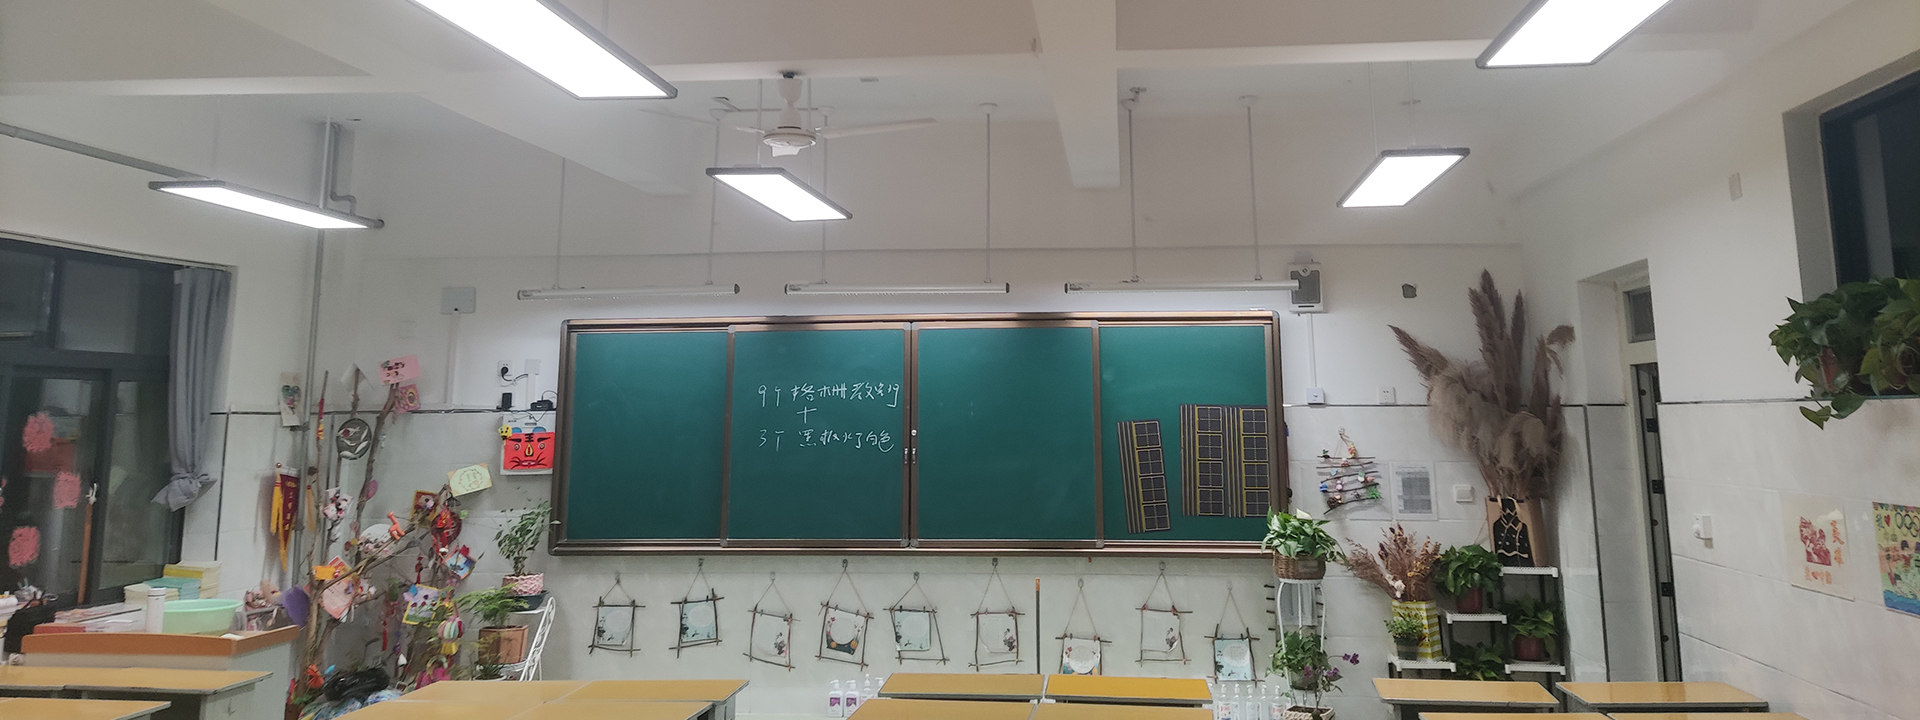 中山市东凤镇中小学教室增亮改造项目